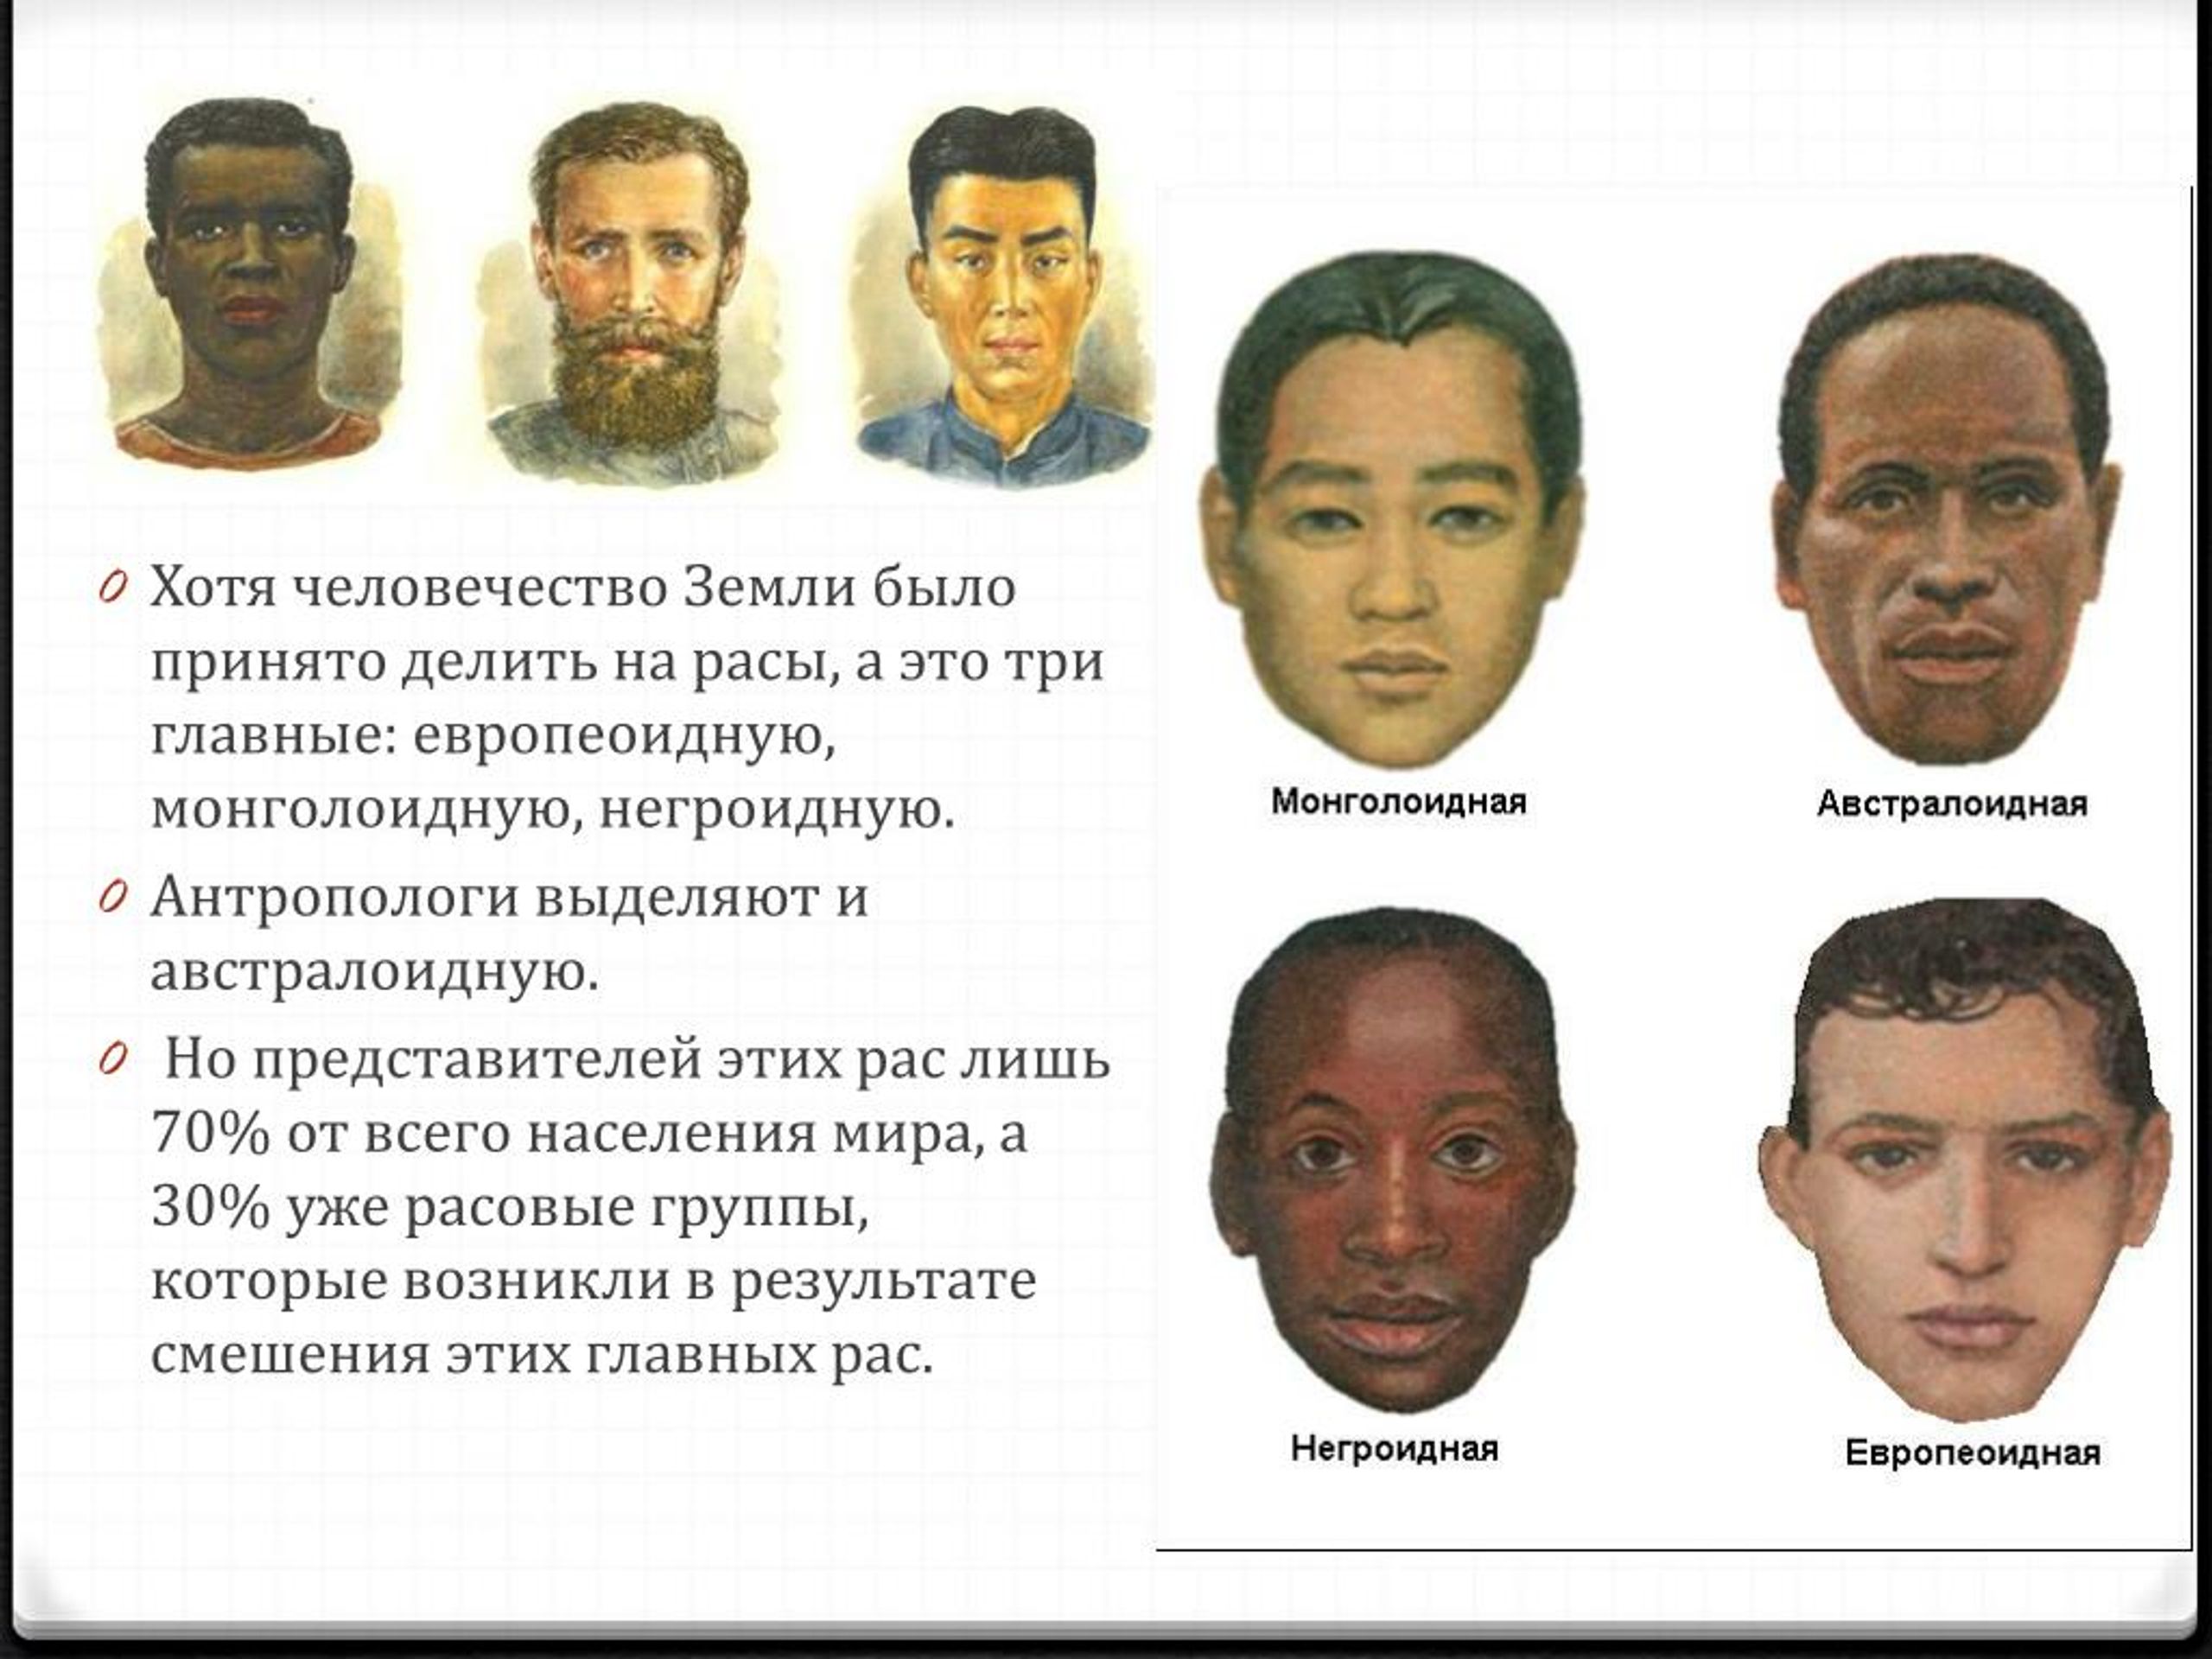 Раса нация народ. Европеоидная и монголоидная раса. Расы людей европеоидная монголоидная негроидная. Монголоидная раса европеоидная раса. Монголоидная раса европеоидная раса негроидная.